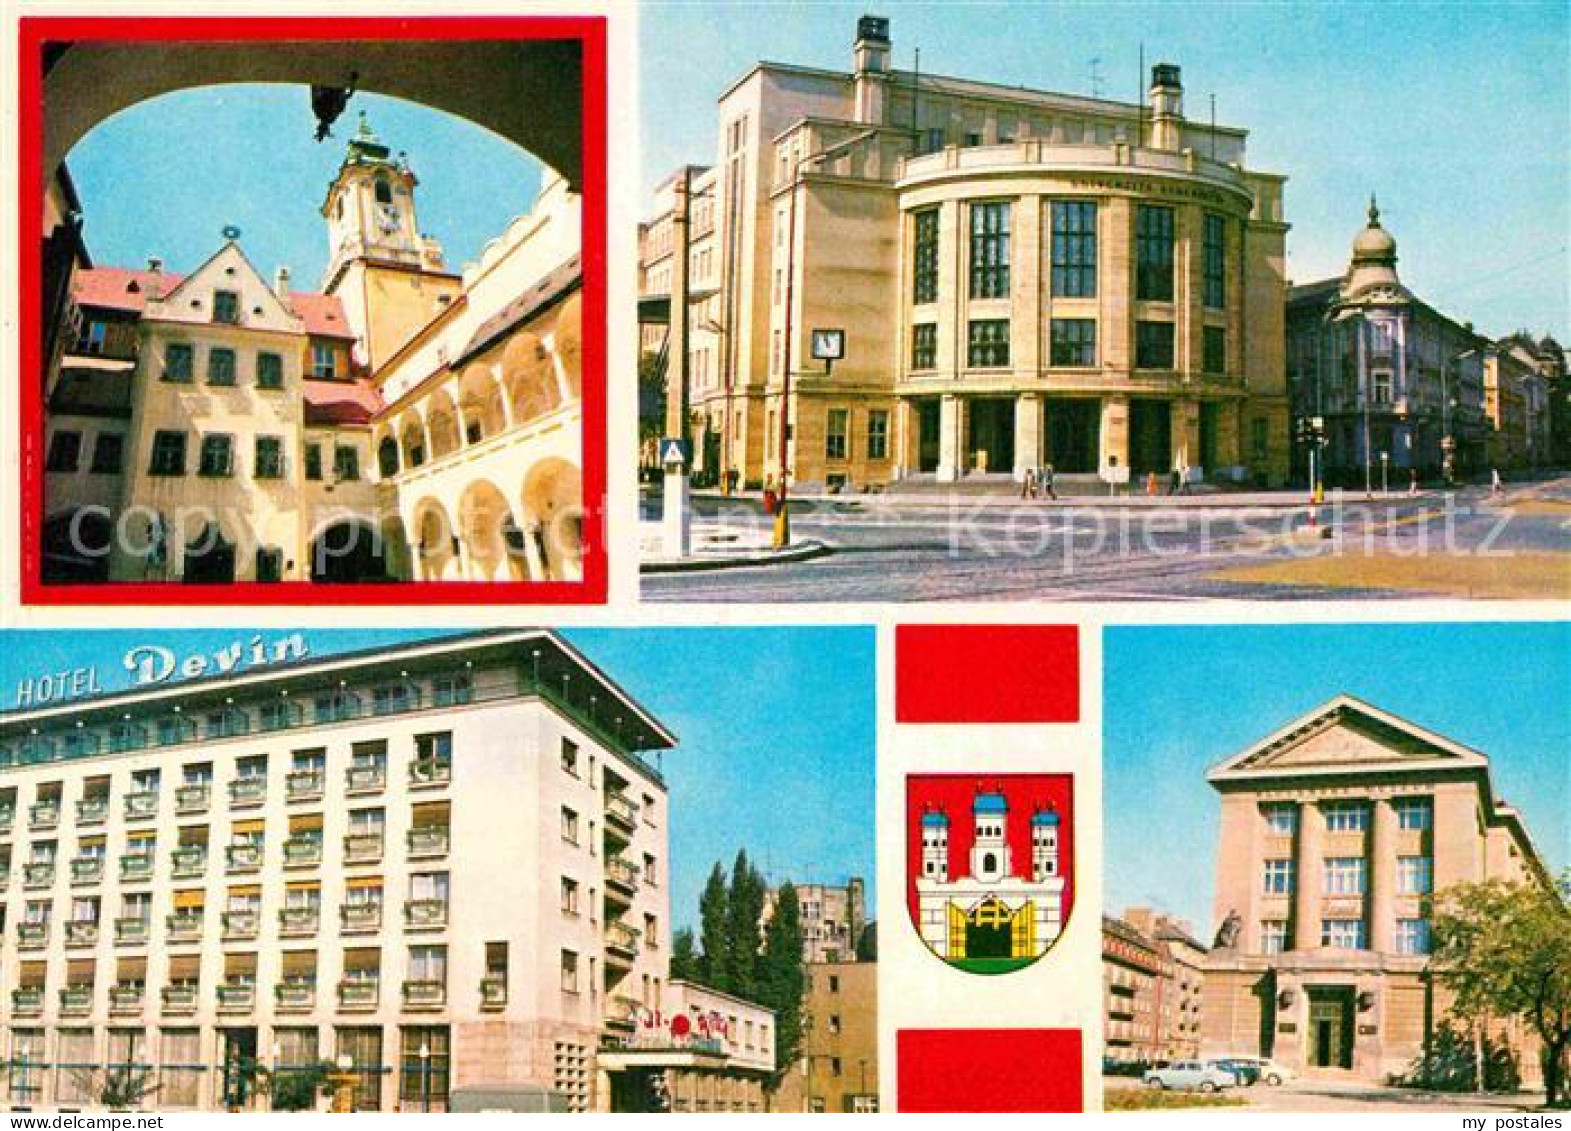 72845142 Bratislava Pressburg Pozsony Nadvorie Starej Radnice Univerzita Komensk - Slovaquie